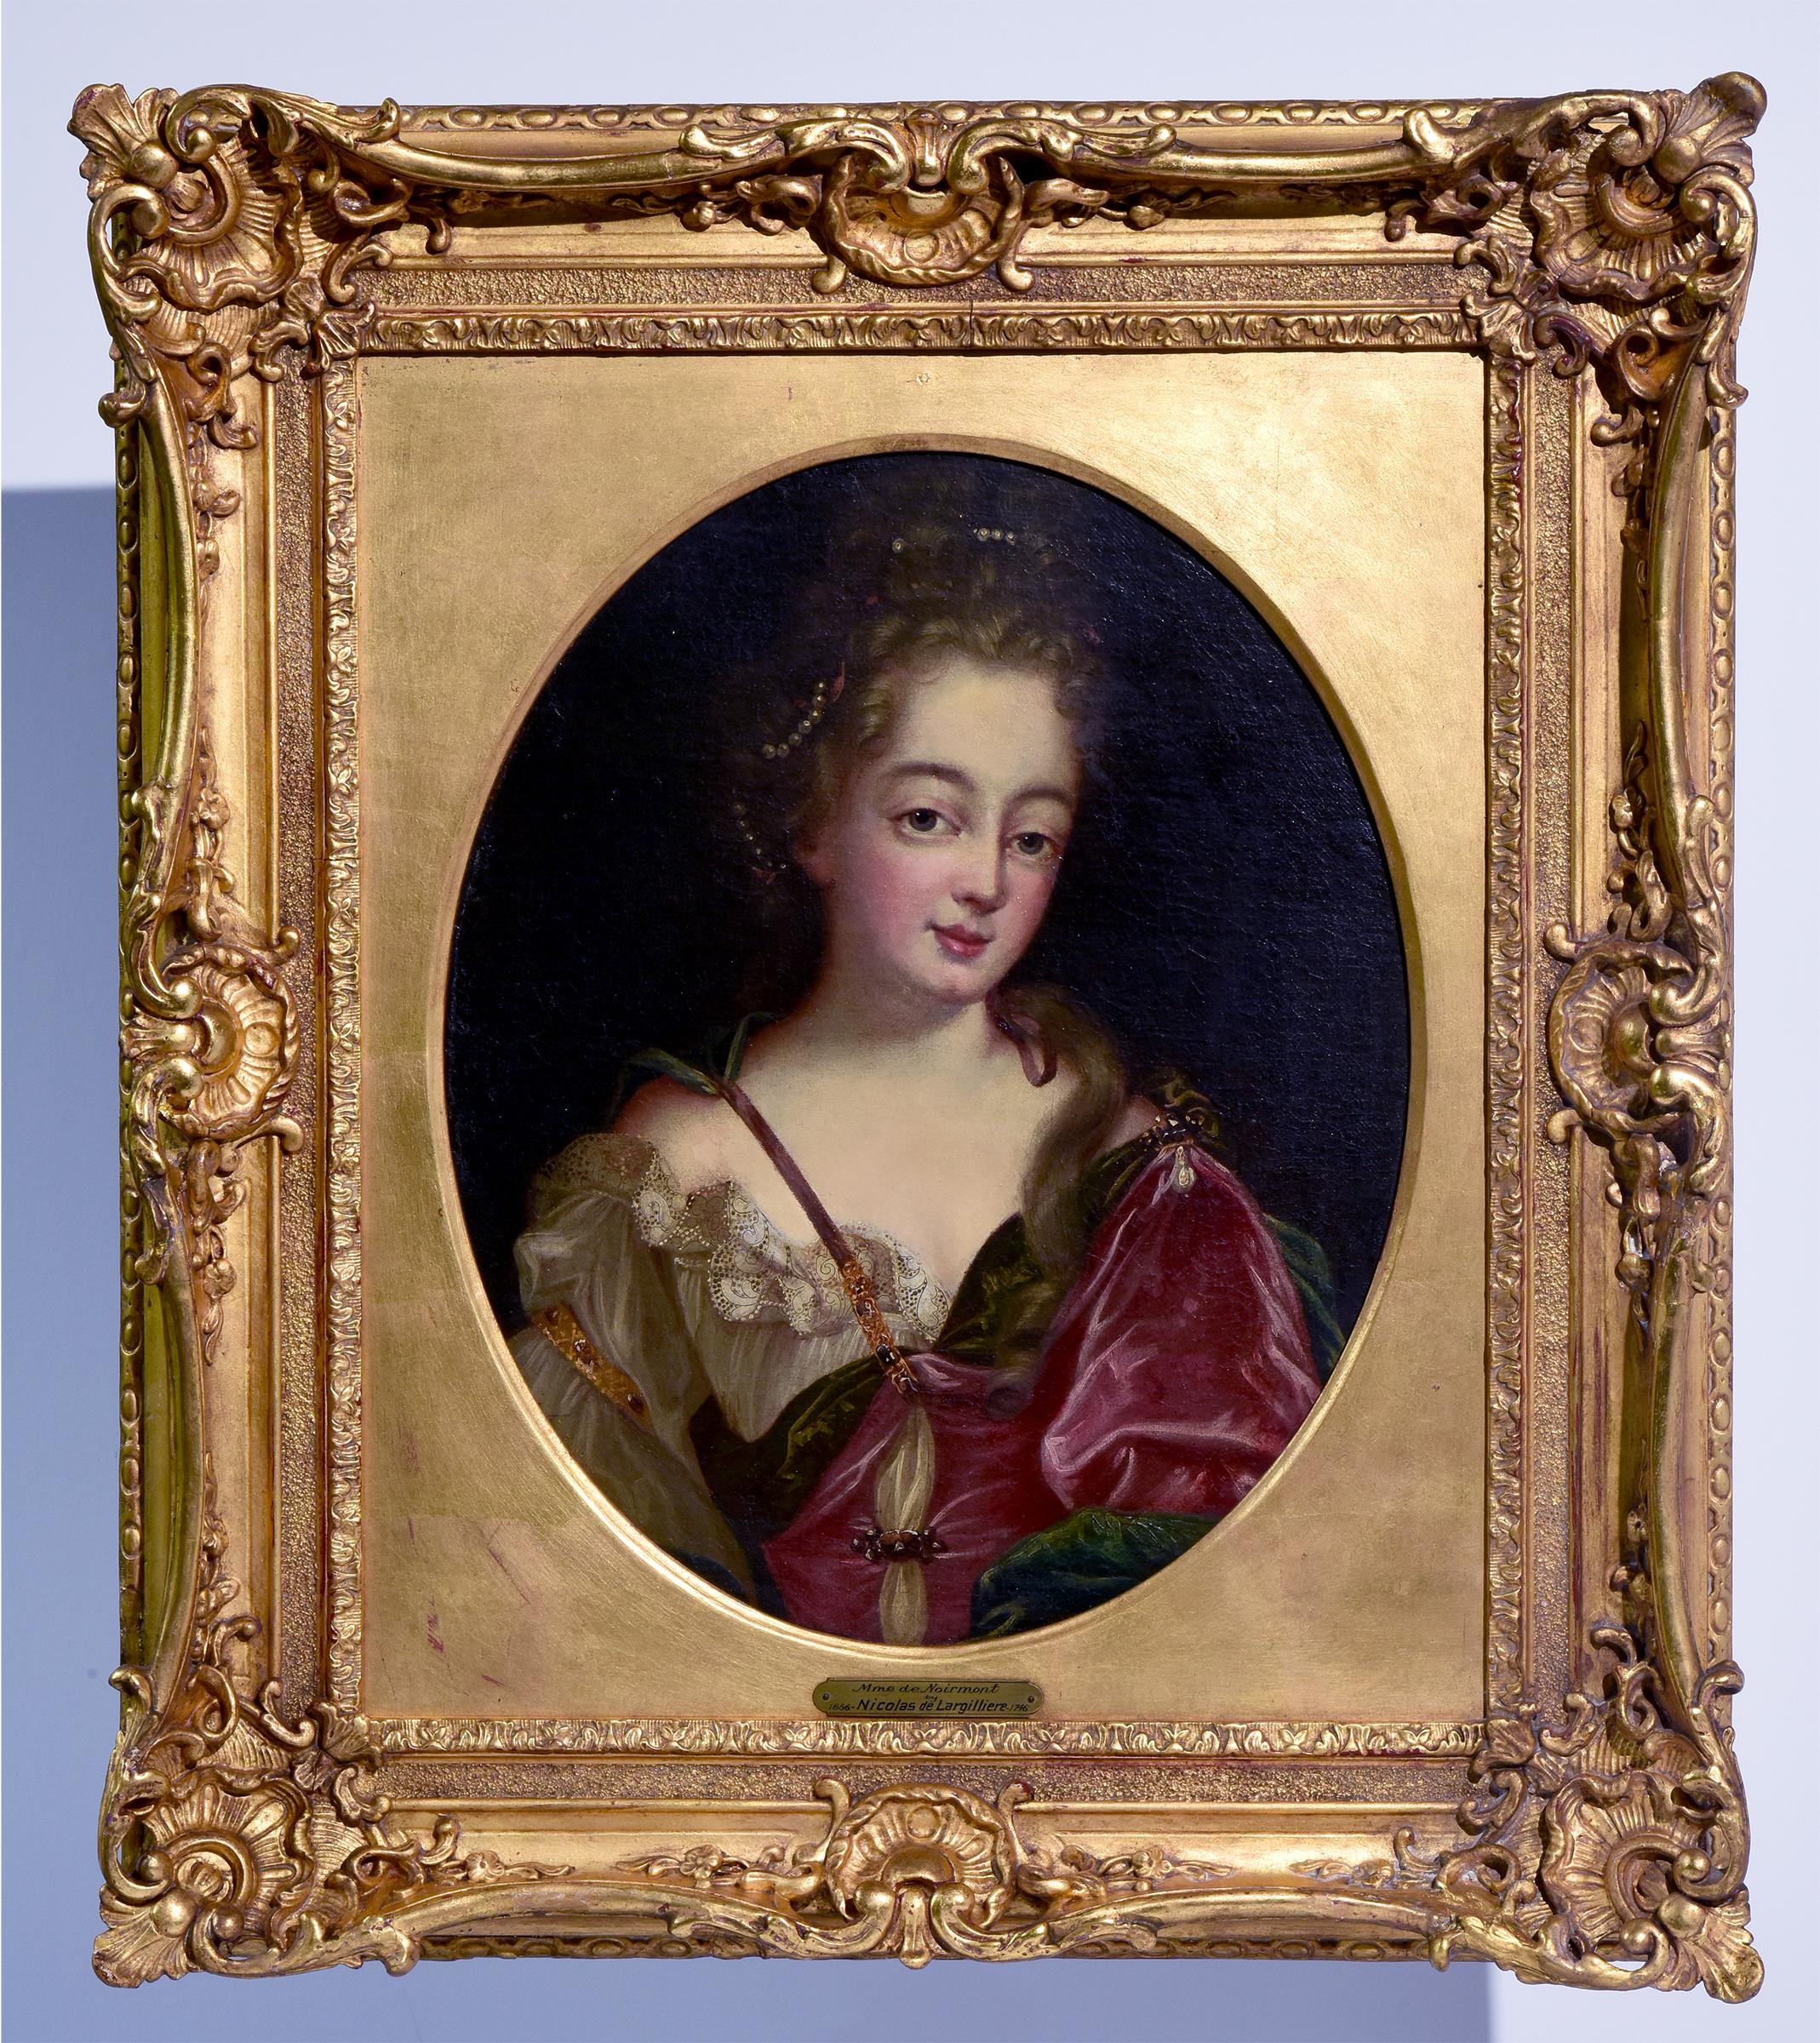 (circle of) Nicolas de Largillierre Portrait Painting - "Mme de Noirmont", Oil on Canvas Portrait, circa 18th Century